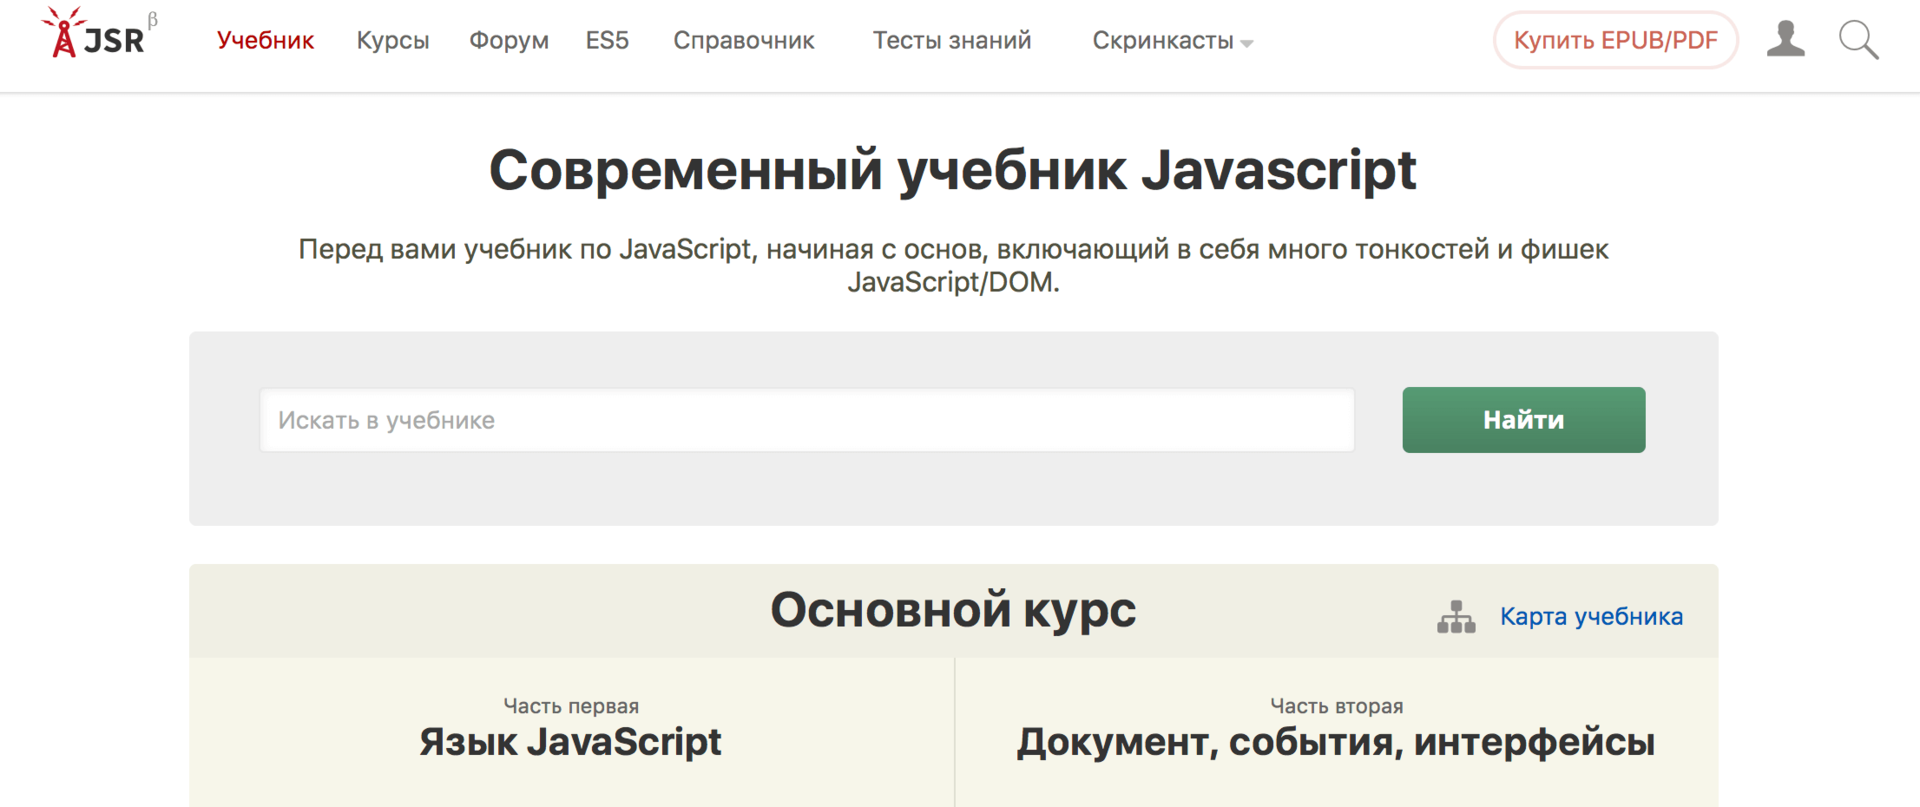 javascript.ru